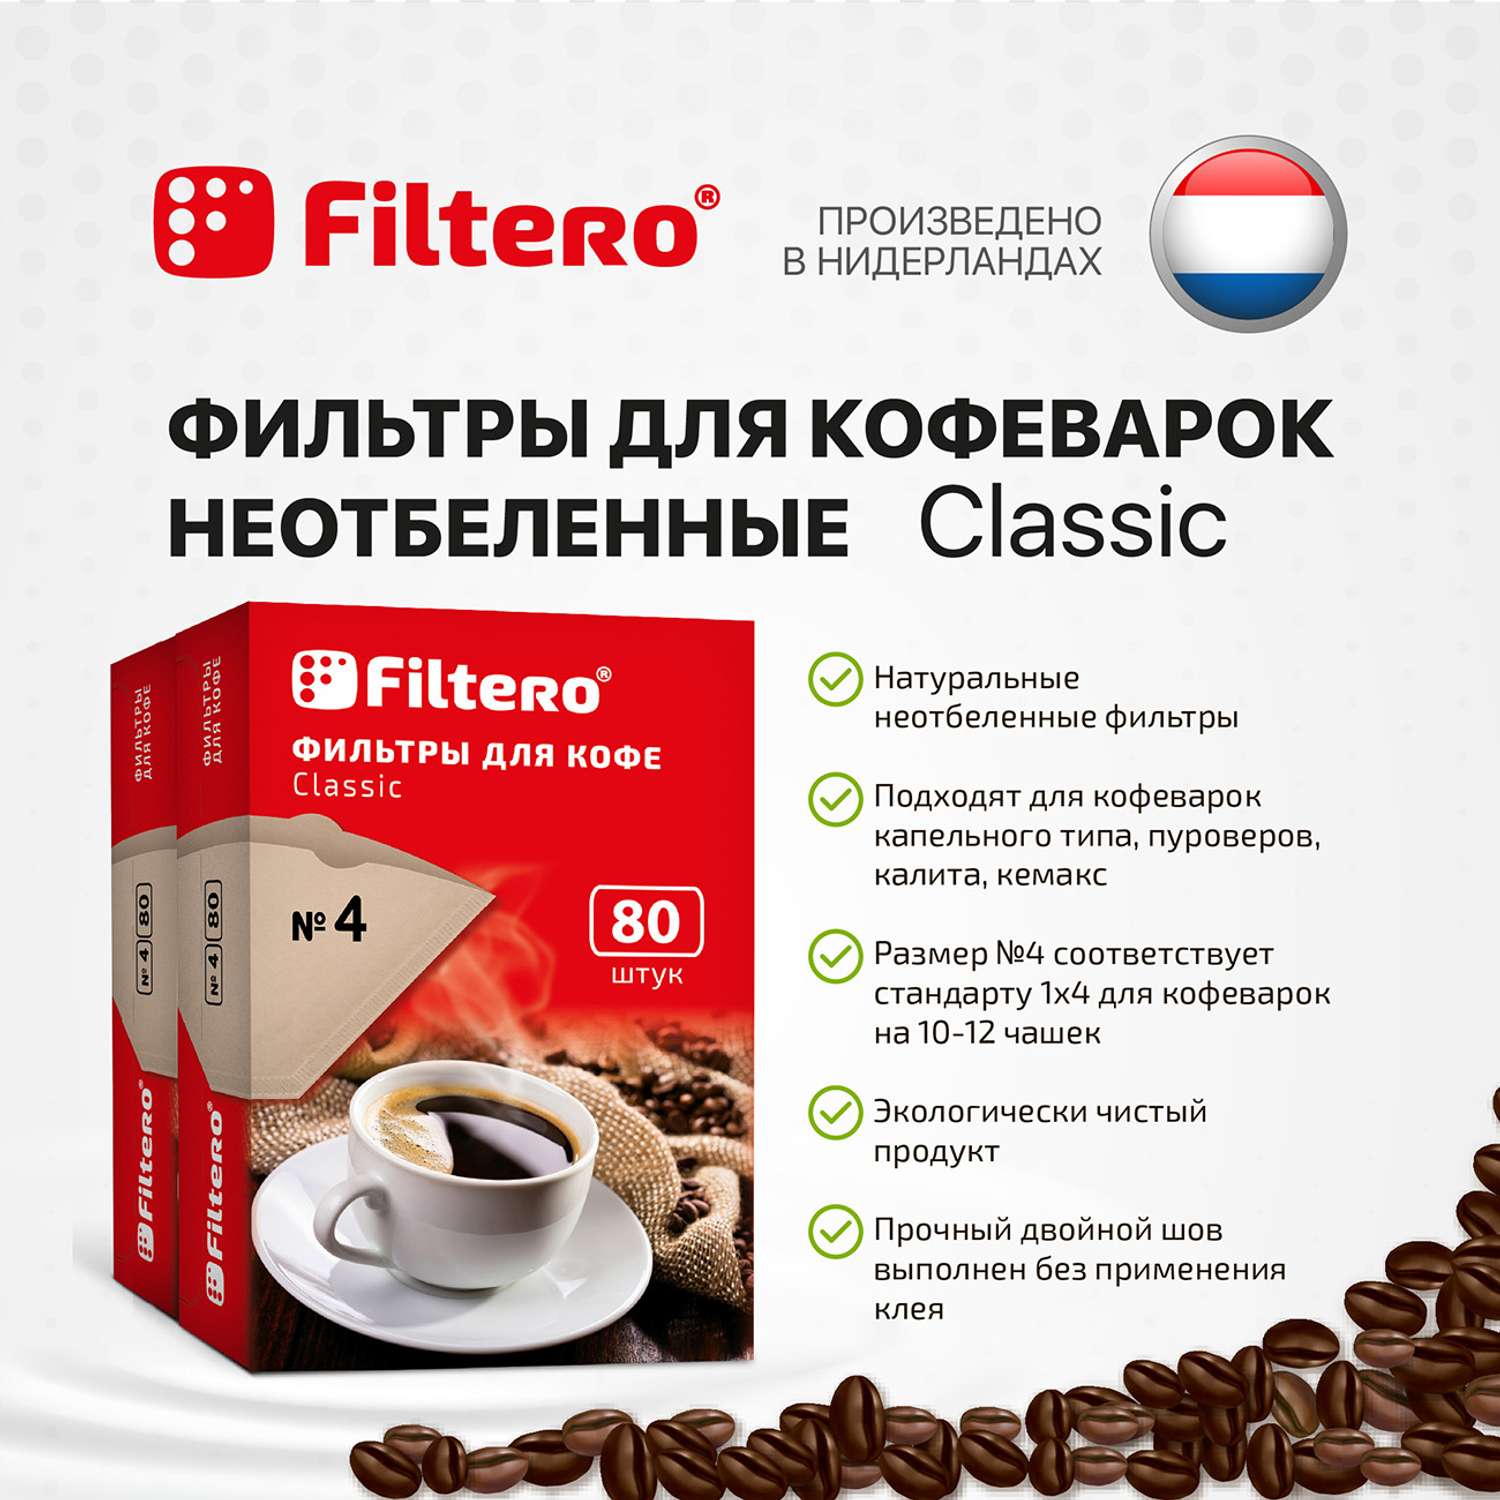 Комплект фильтров Filtero для кофеварки №4/160 коричневые Classic - фото 3